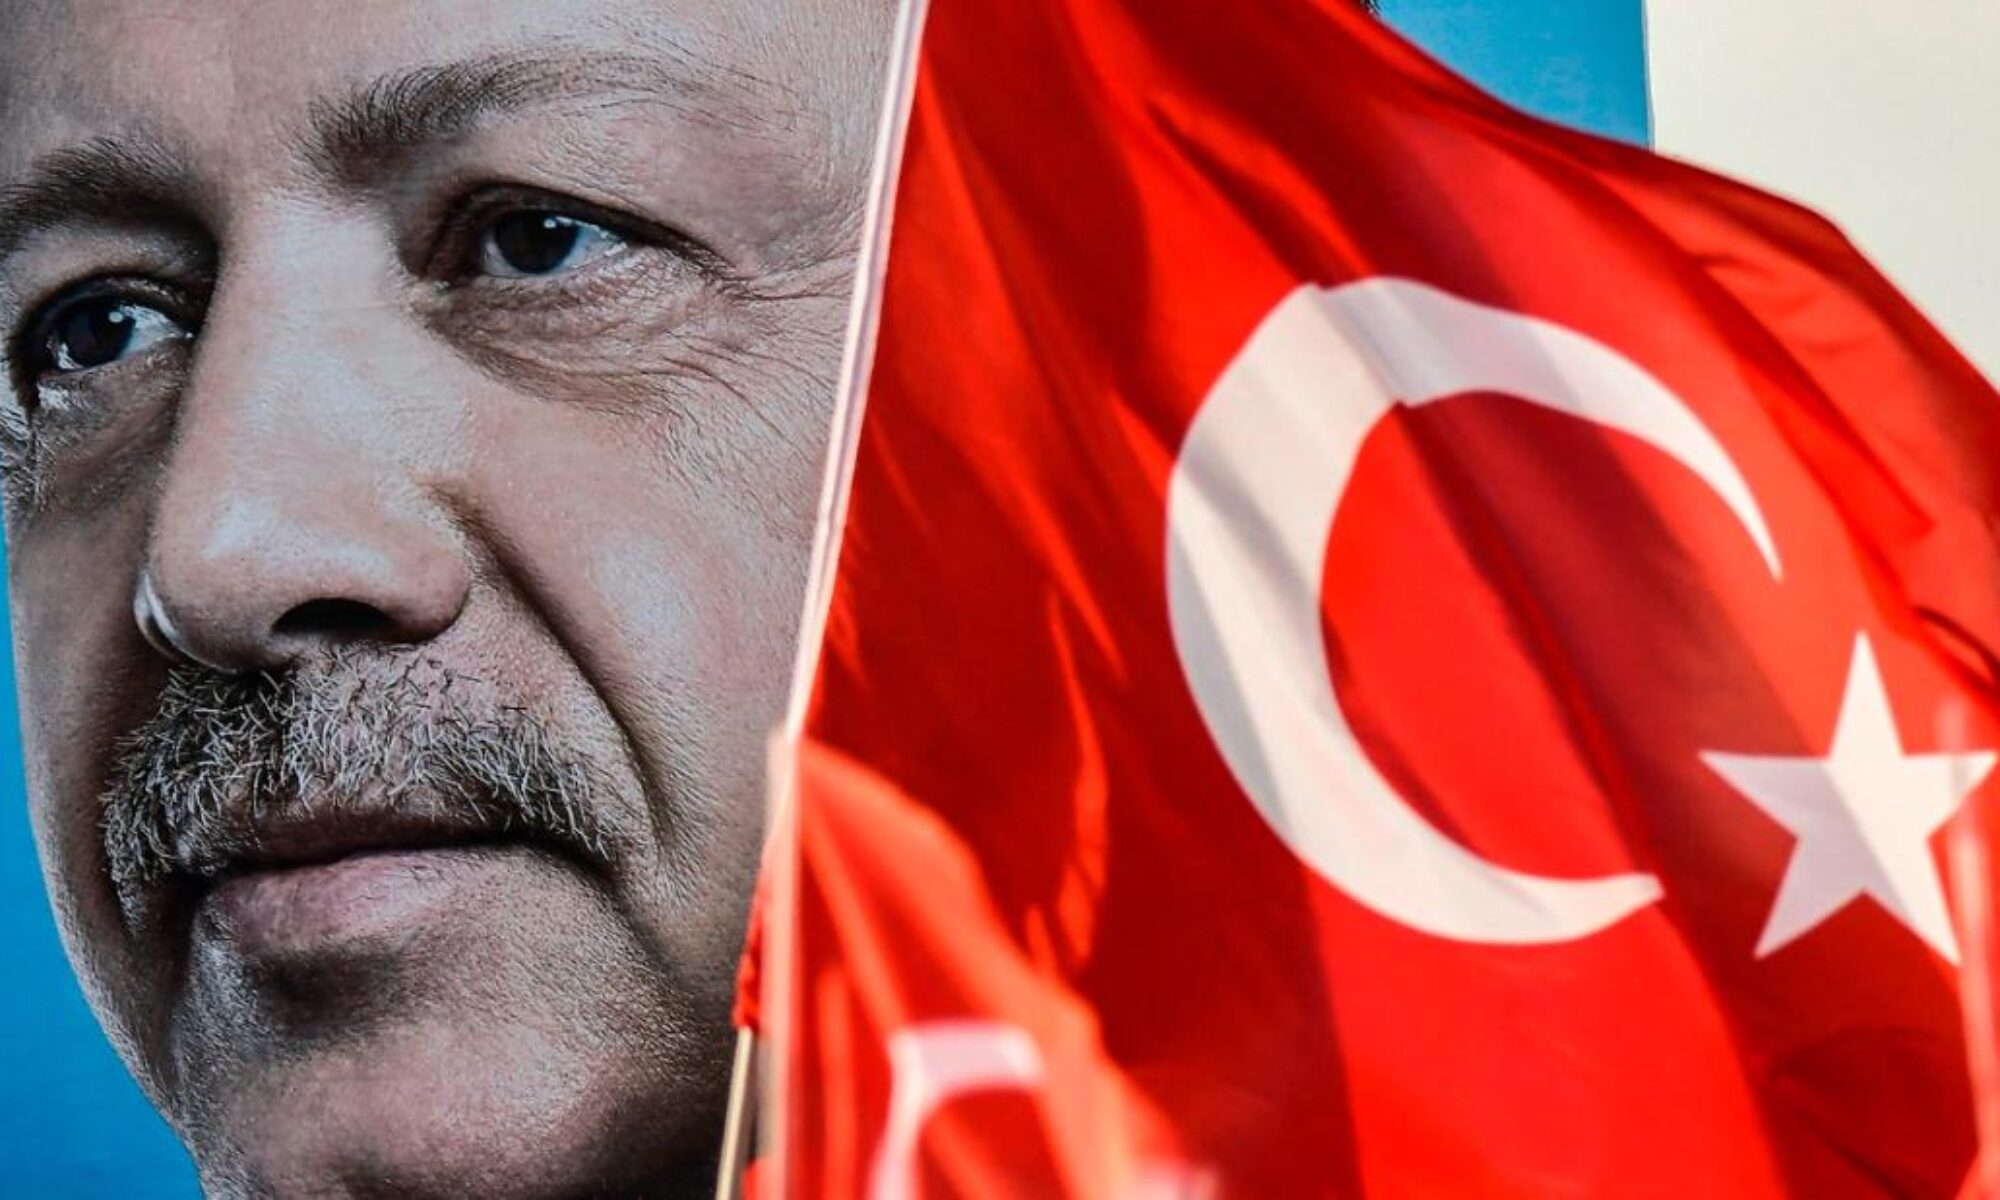 Zaho saldırısı için Erdoğan'dan vurdumduymaz tutum: Oyuna gelmeyelim